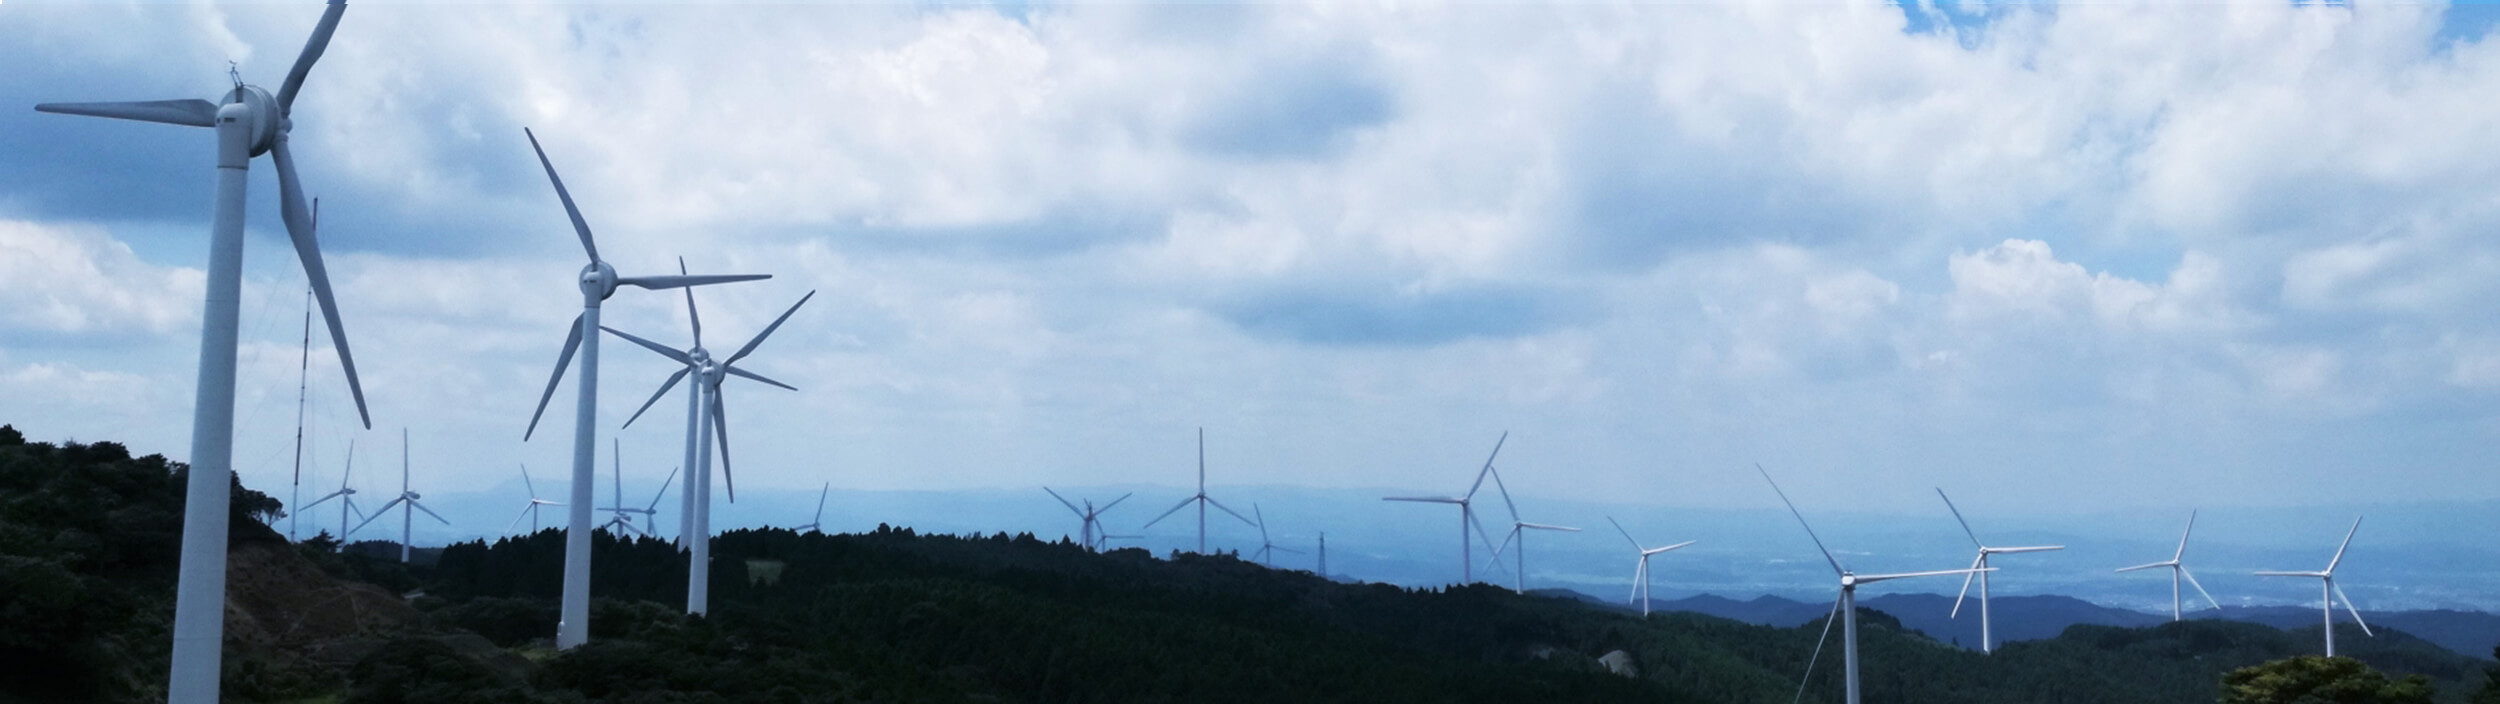 曇り空の背景に風力発電の羽が並んでいる画像